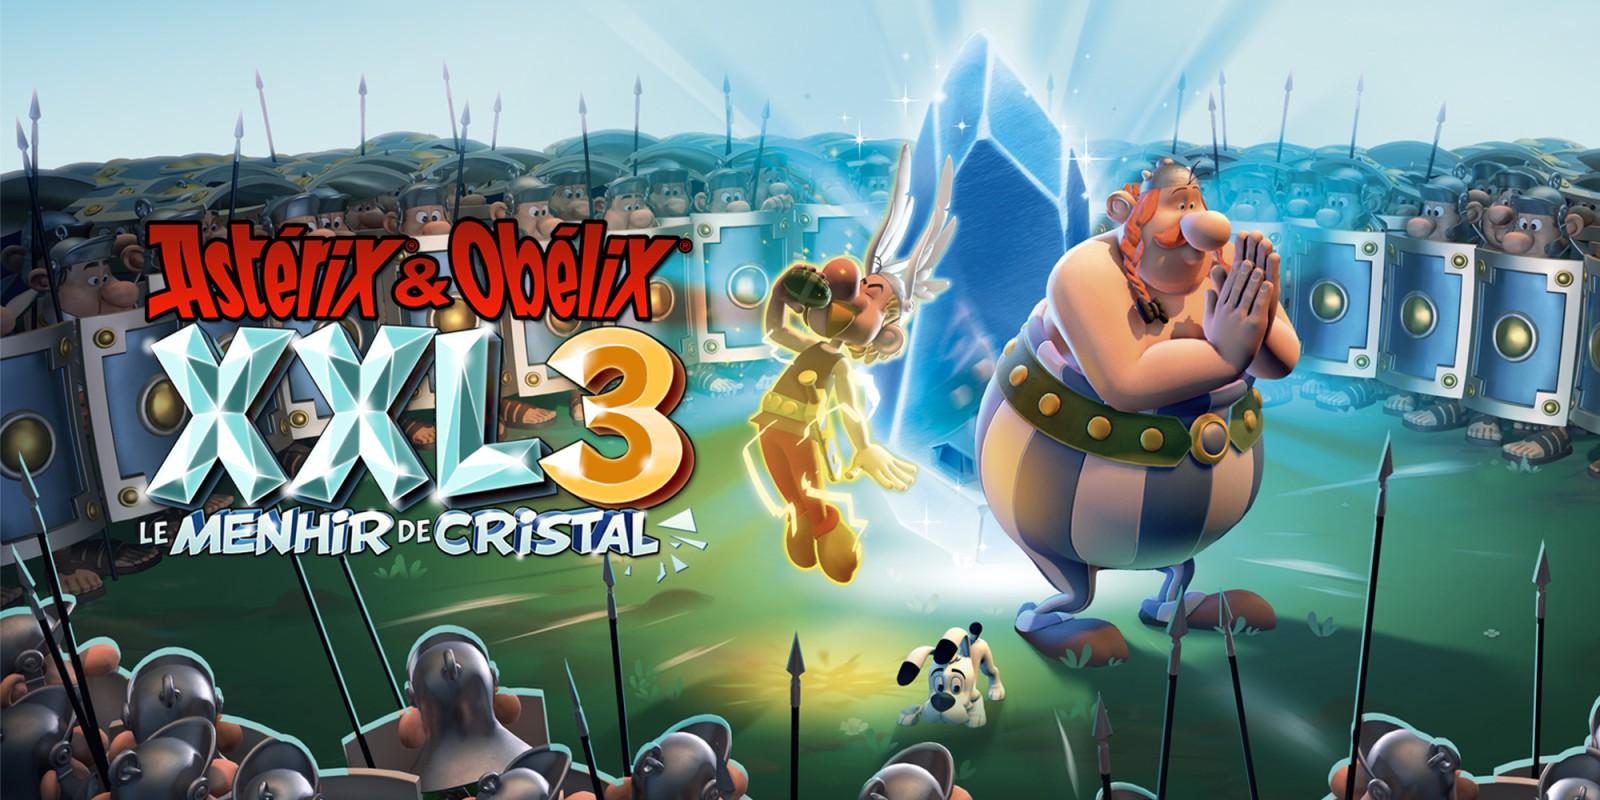 Asterix Obelix Xxl 3 Menhir Cristal